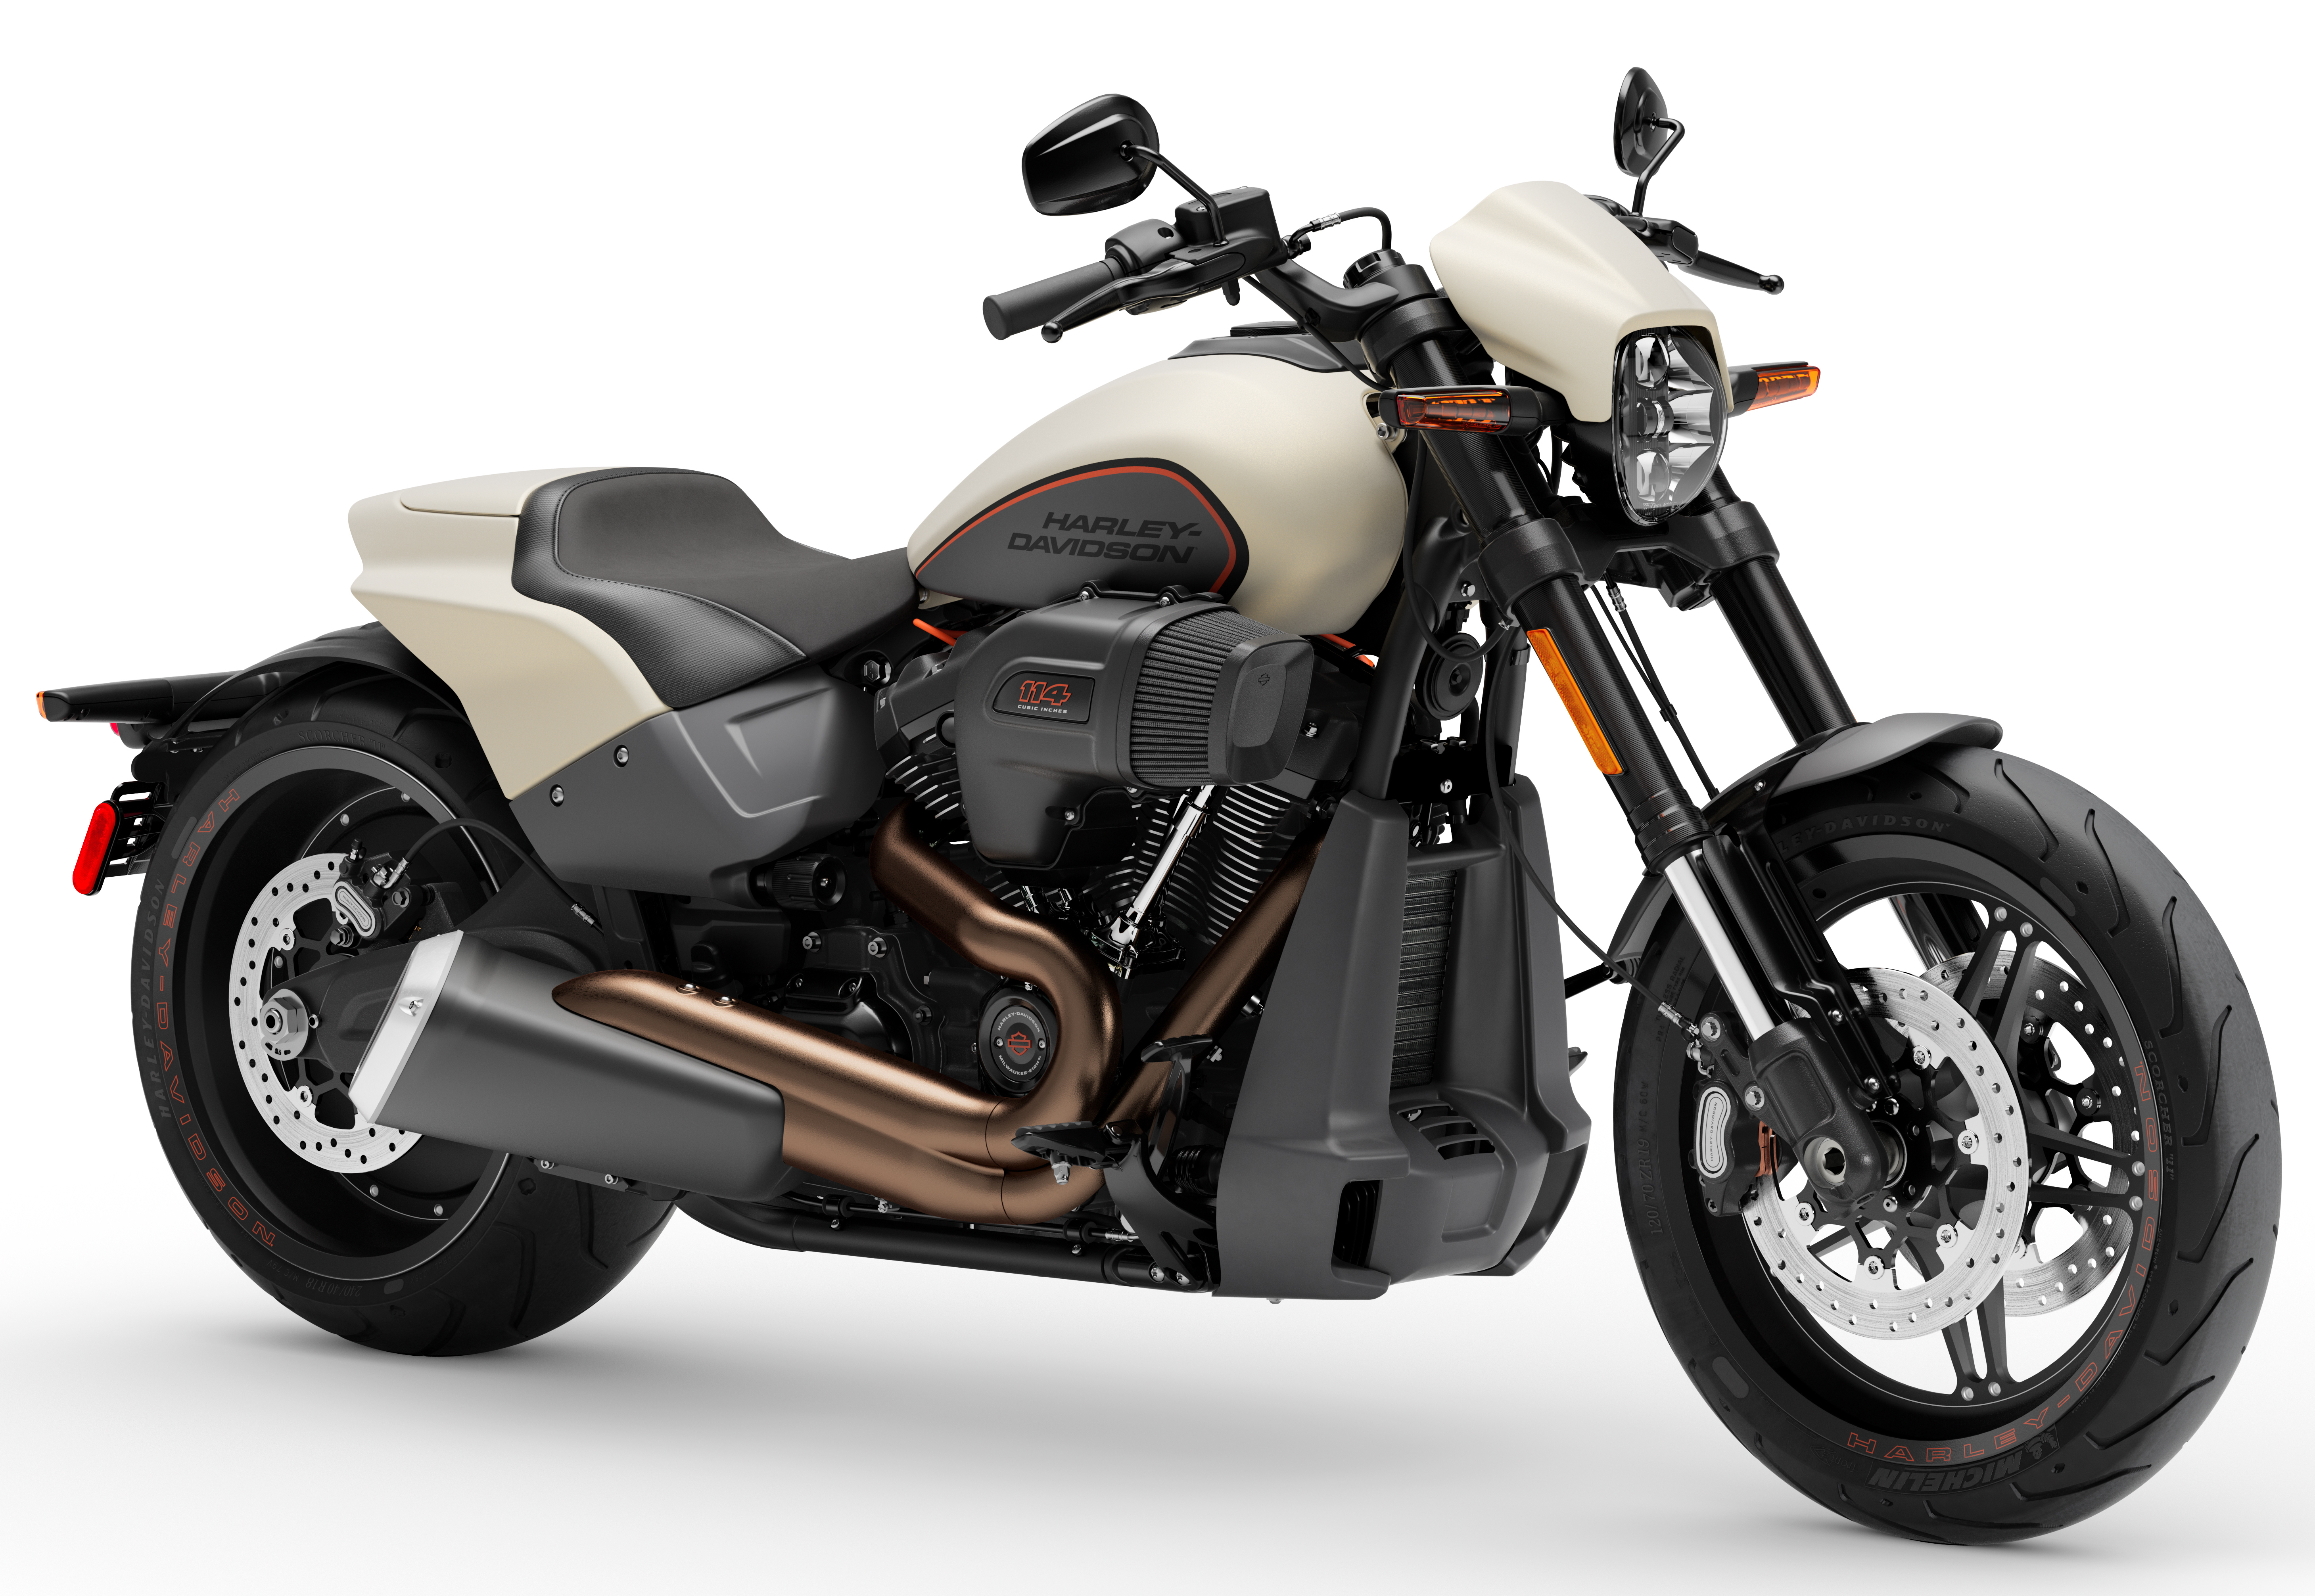 Новые модели мотоциклов. Мотоцикл Harley Davidson FXDR 114. Харлей Дэвидсон Softail FXDR 114. Харлей Дэвидсон мотоциклы последняя модель. Харлей Дэвидсон мотоциклы Модельный ряд 2020.